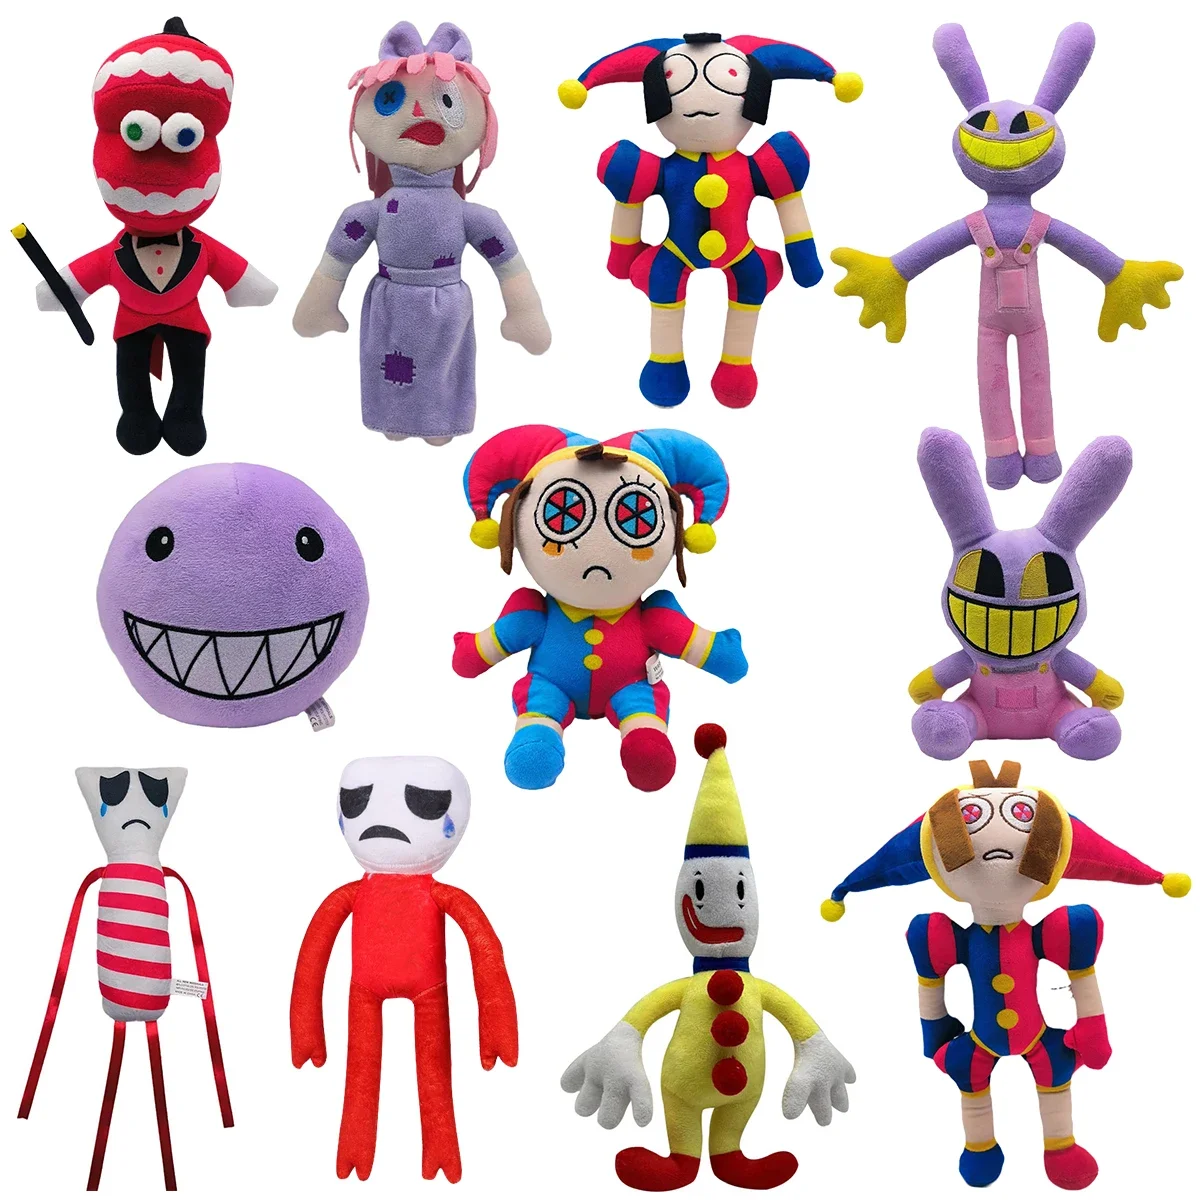 The Amazing Digital Circus Clown Plush Toy Pomni Plush Dolls Cute Cartoon  Soft Stuffed Doll Funny Co